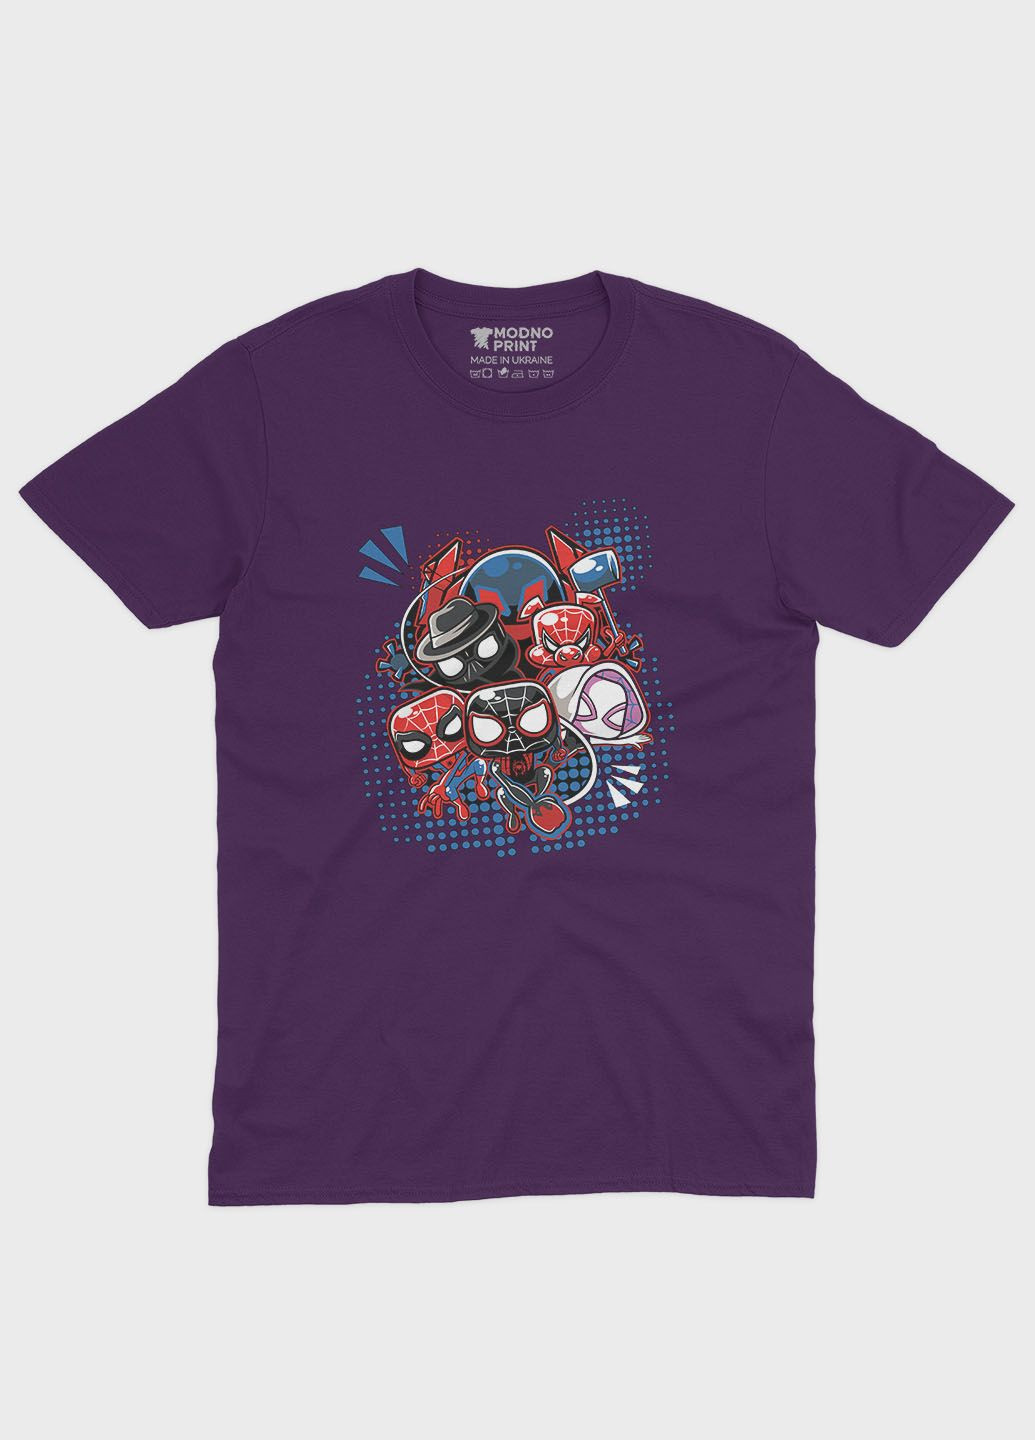 Фіолетова демісезонна футболка для дівчинки з принтом супергероя - людина-павук (ts001-1-dby-006-014-023-g) Modno